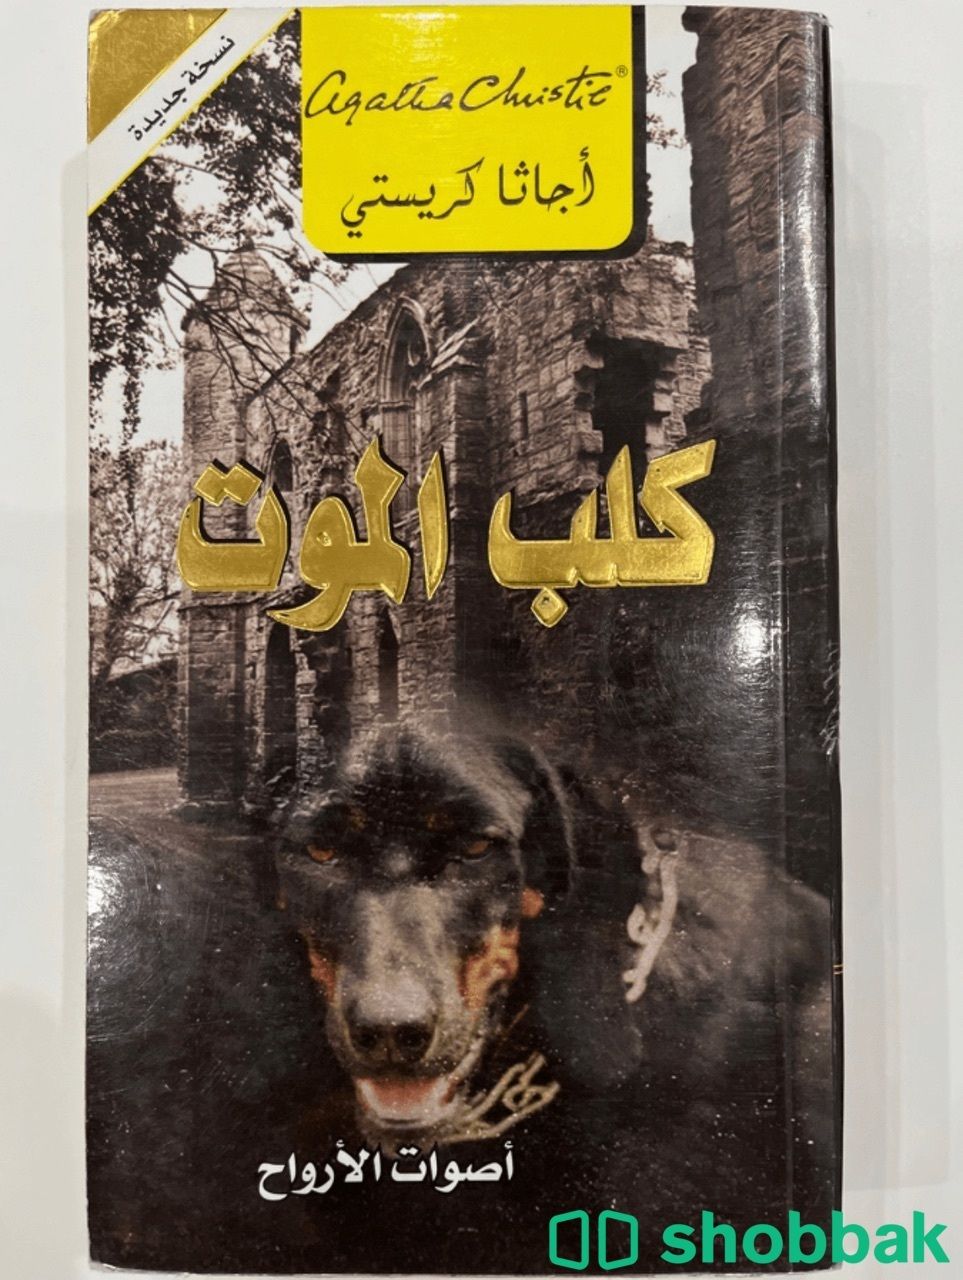 رواية اجاثا كريستي "كلب الموت" Shobbak Saudi Arabia